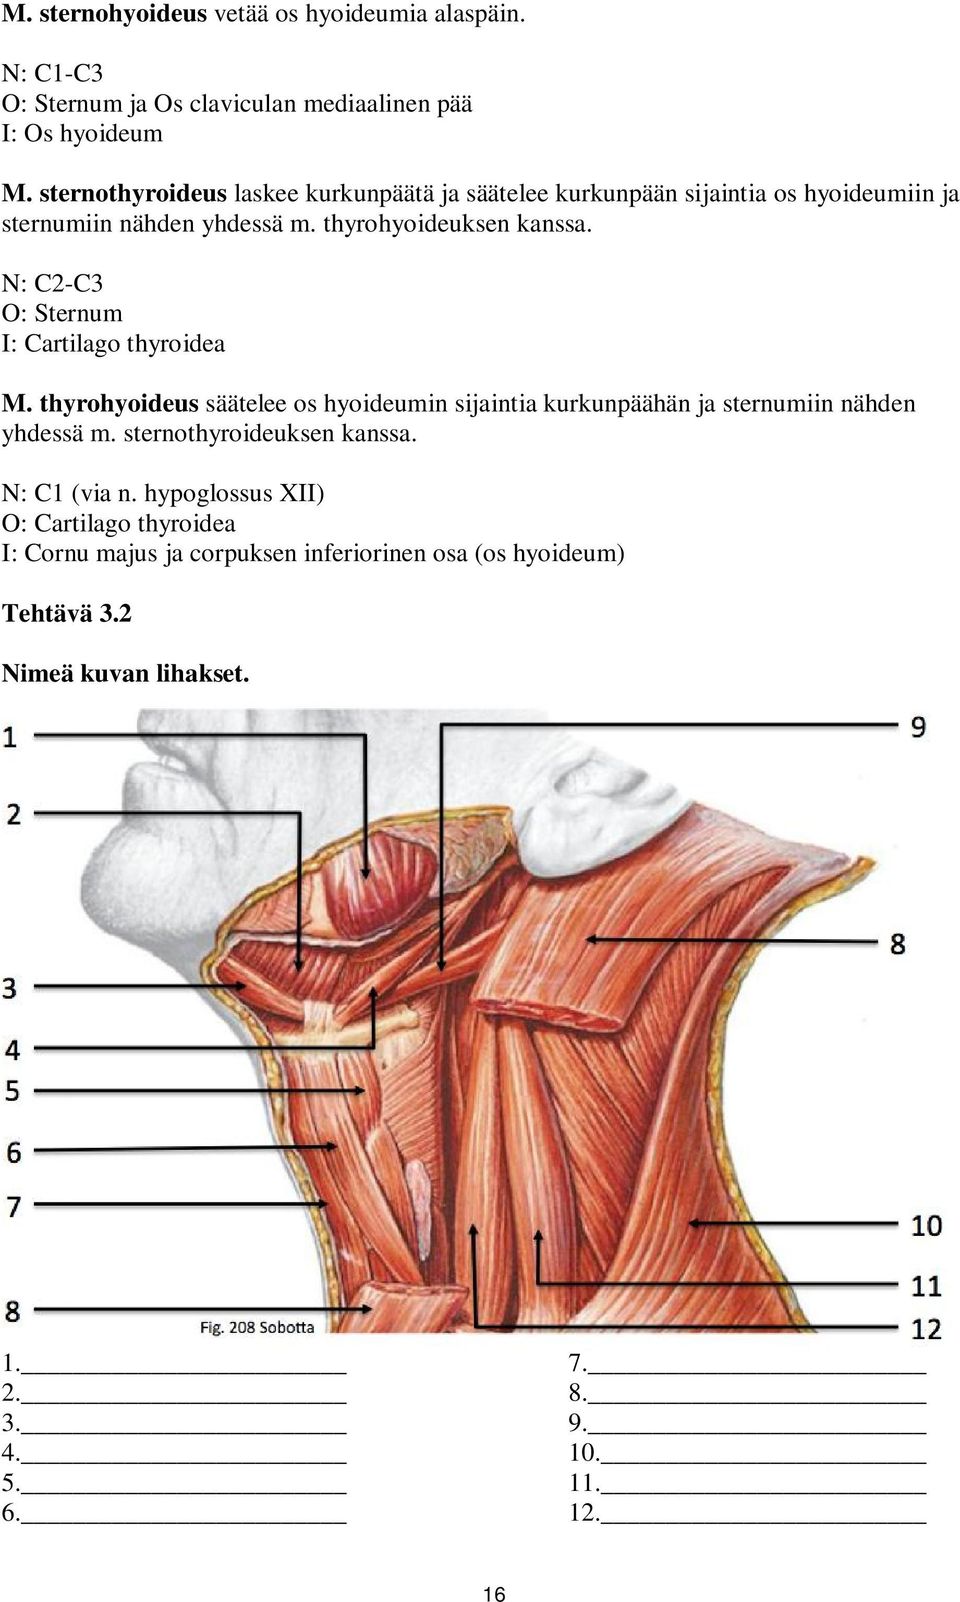 N: C2-C3 O: Sternum I: Cartilago thyroidea M. thyrohyoideus säätelee os hyoideumin sijaintia kurkunpäähän ja sternumiin nähden yhdessä m.